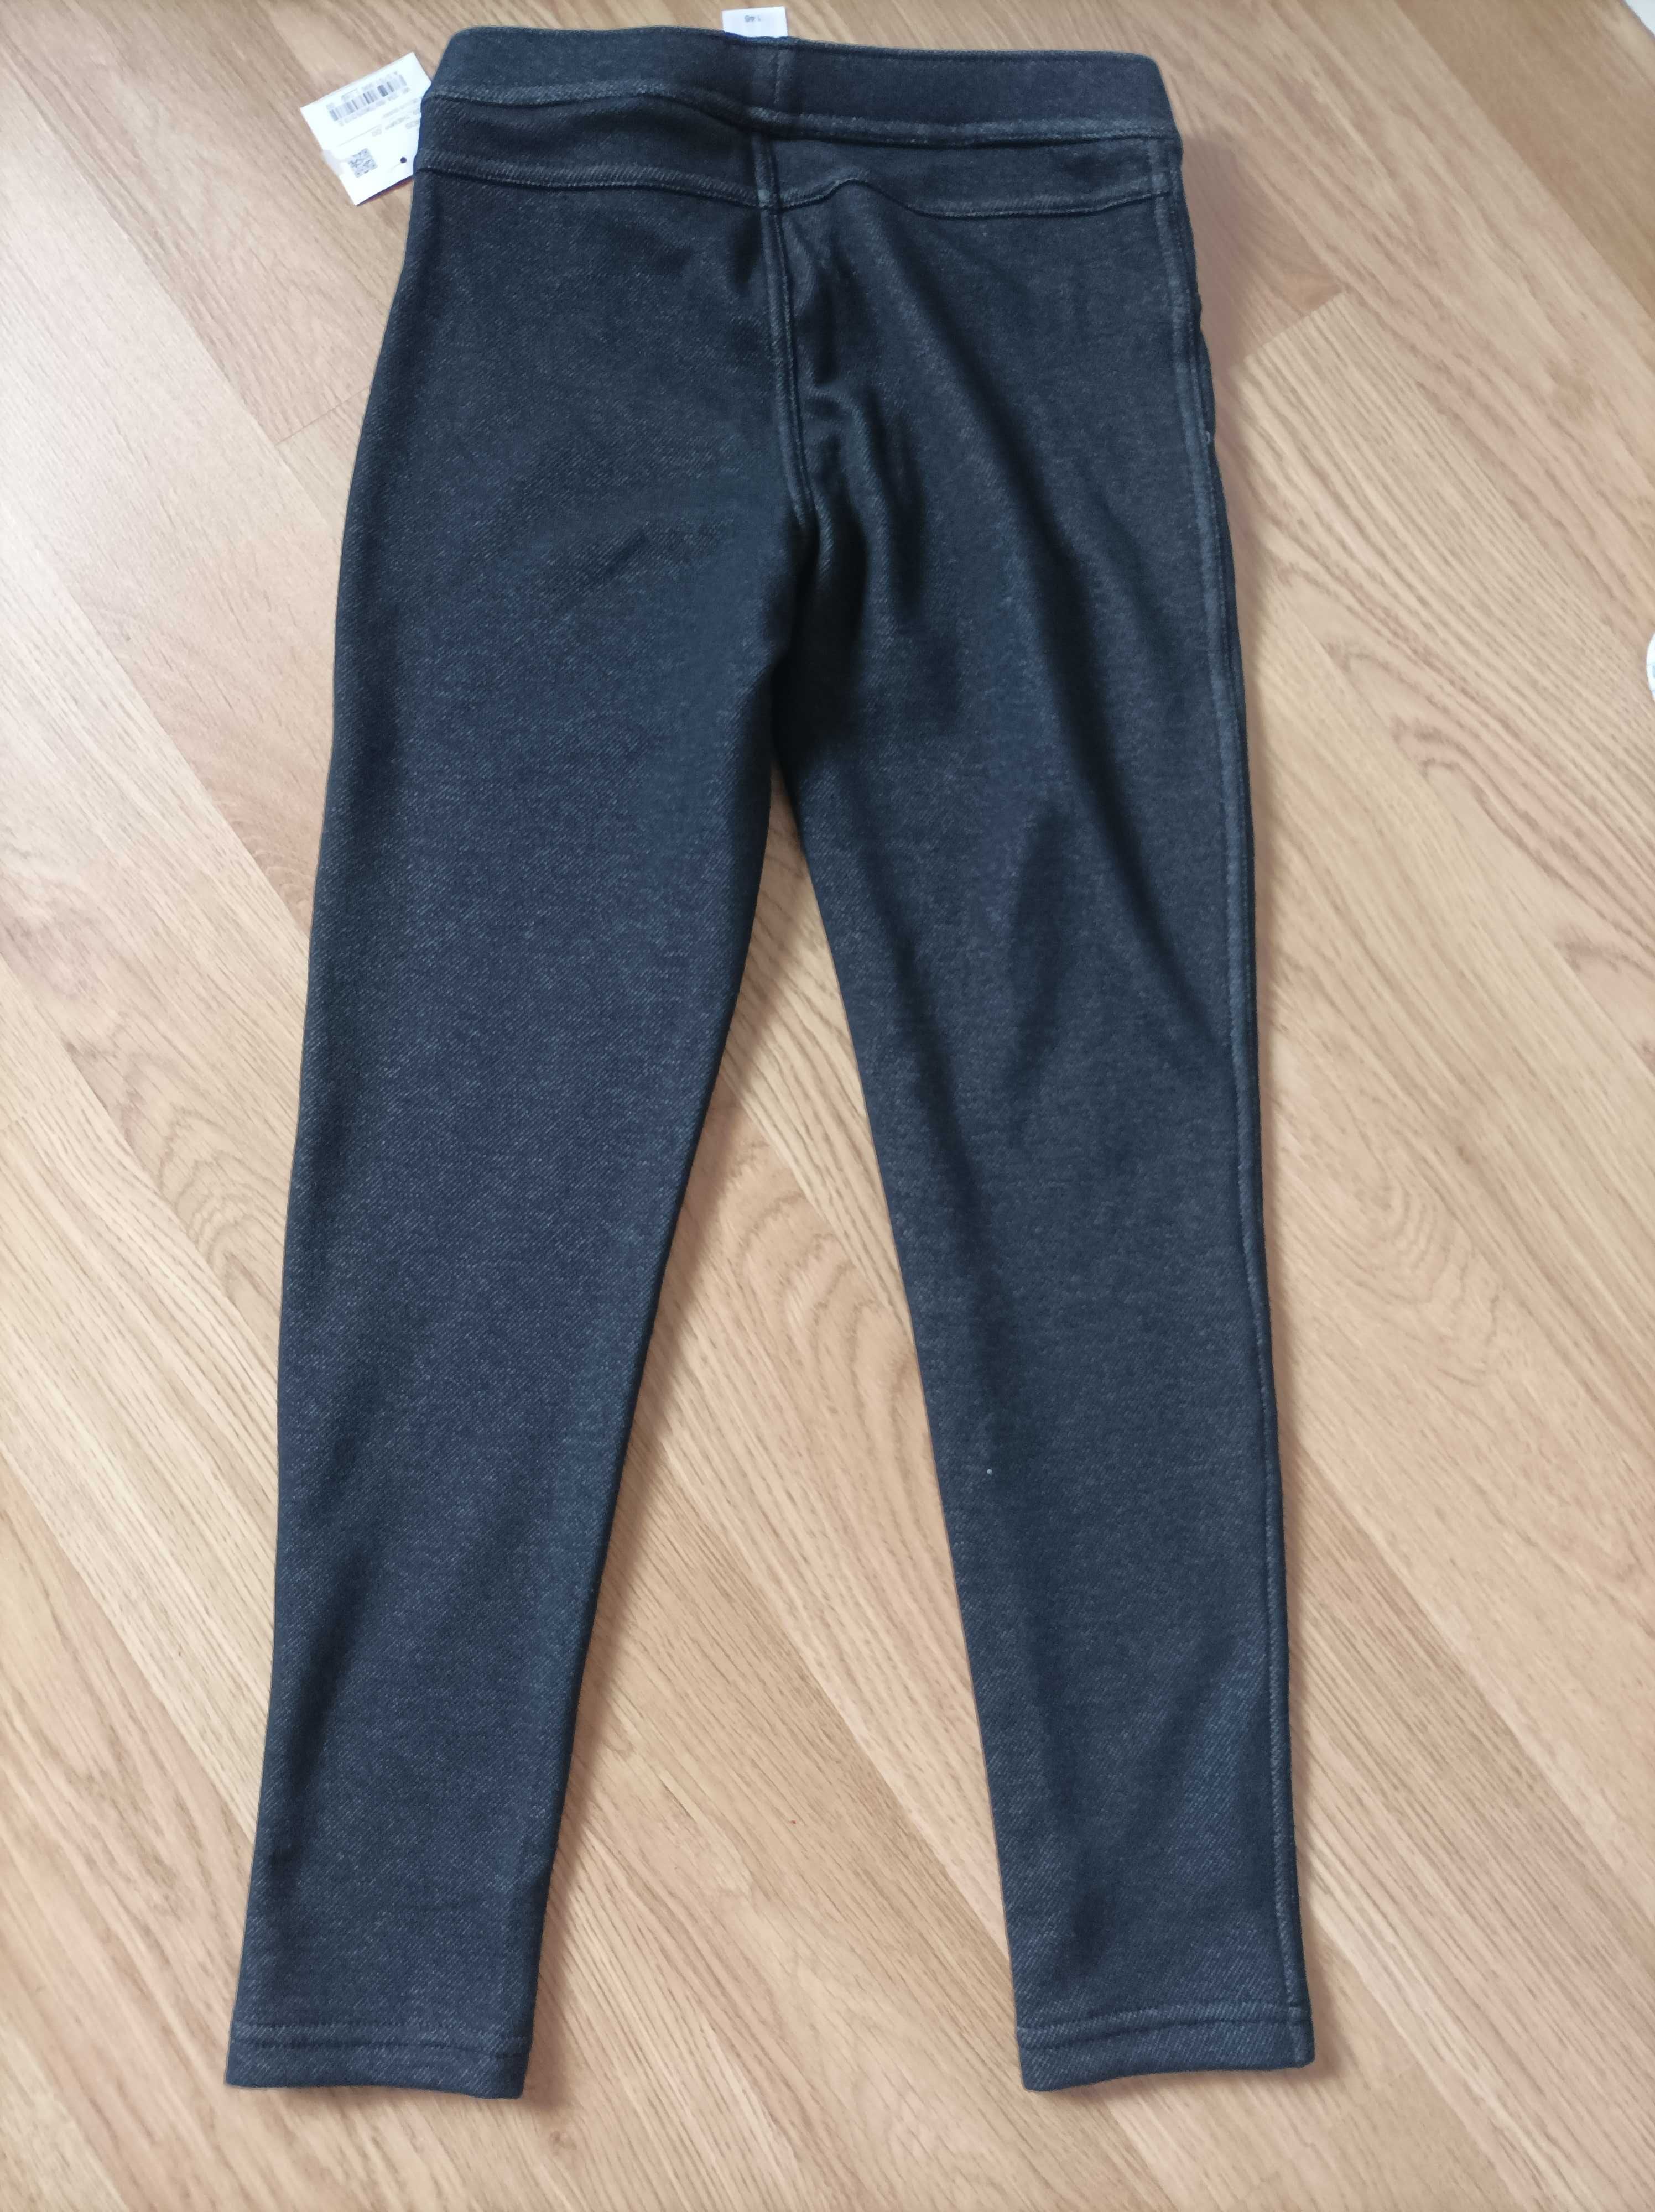 Nowe, ciepłe legginsy z pluszową podszewką, r. 146, ciepłe spodnie.